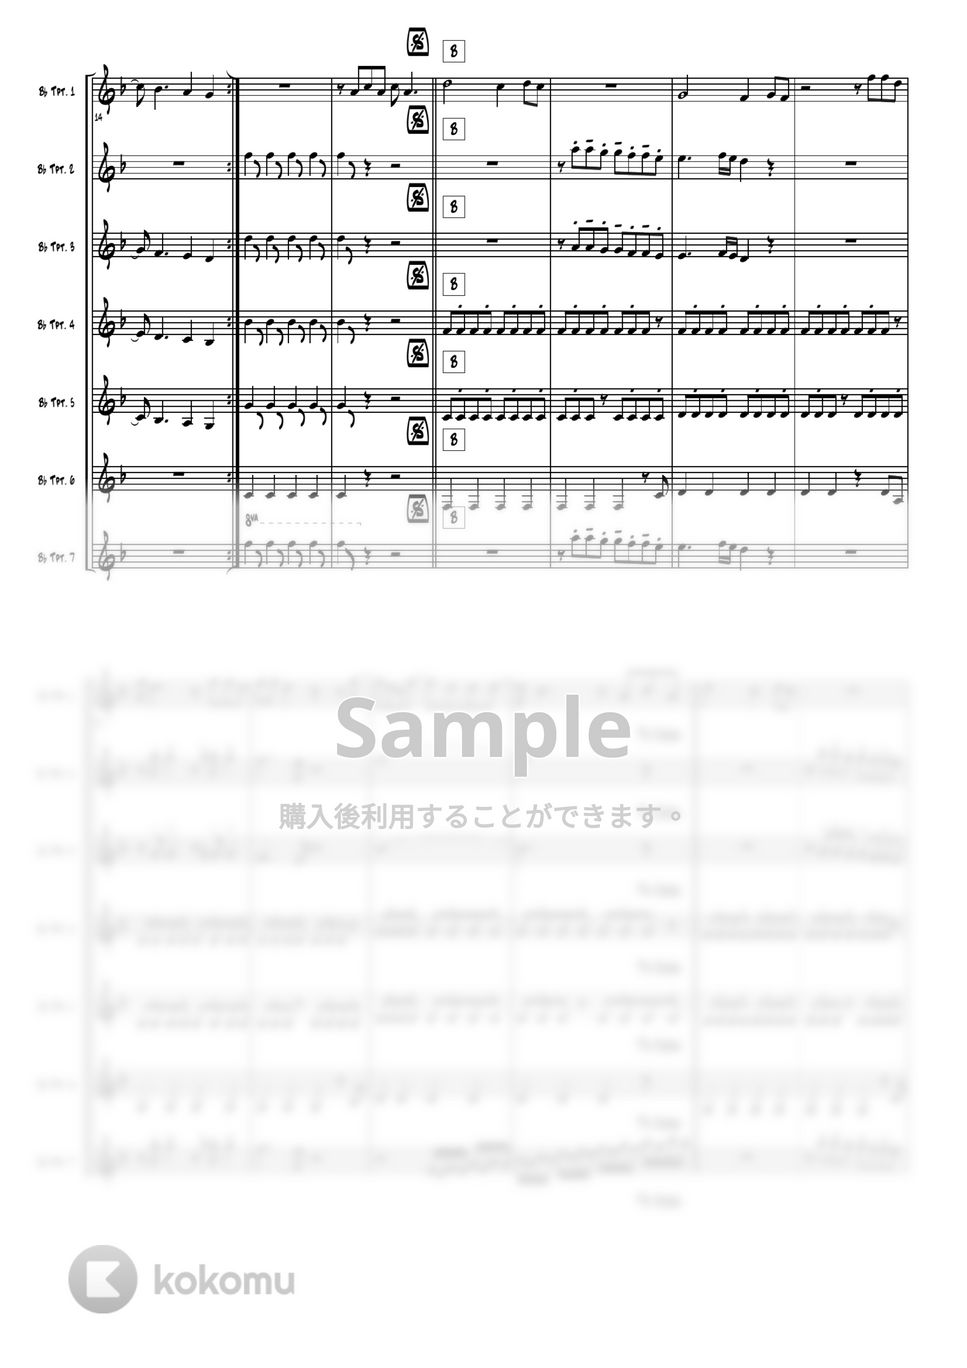 西城秀樹/Village People - Y.M.C.A ヤングマン (トランペット7重奏) by 高田将利